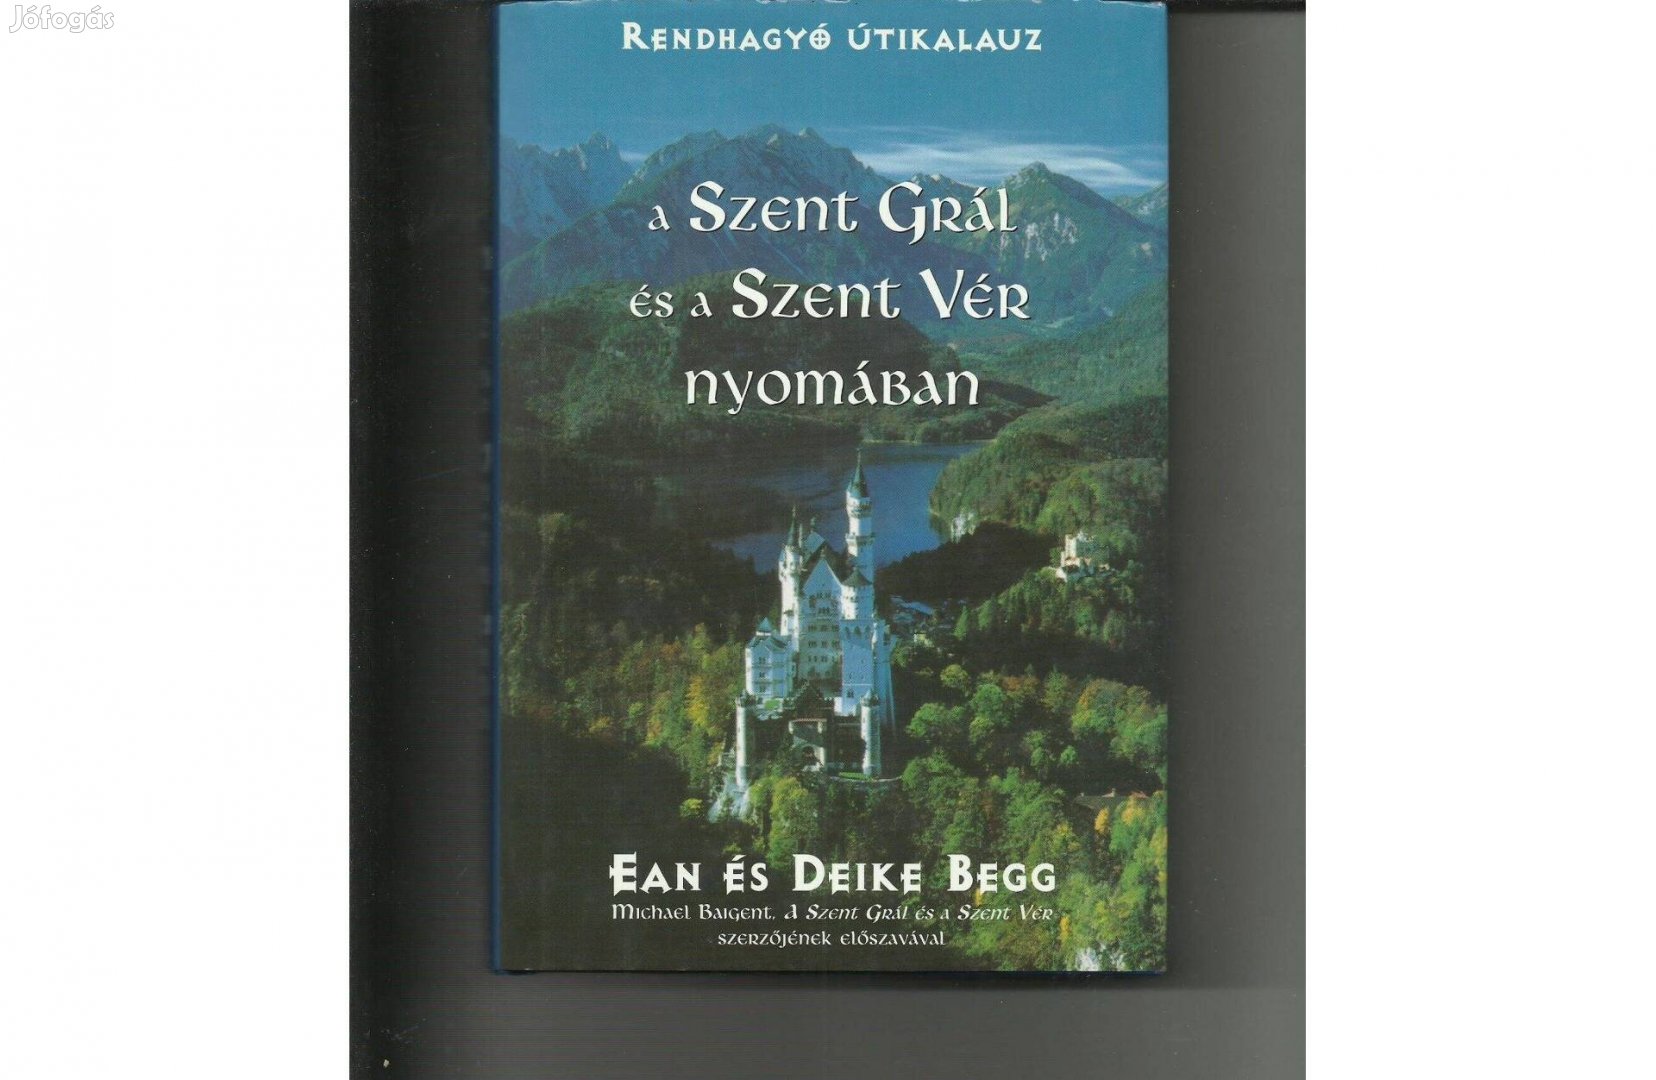 Ean és Deike Begg: A Szent Grál és a Szent Vér nyomában c. könyv eladó